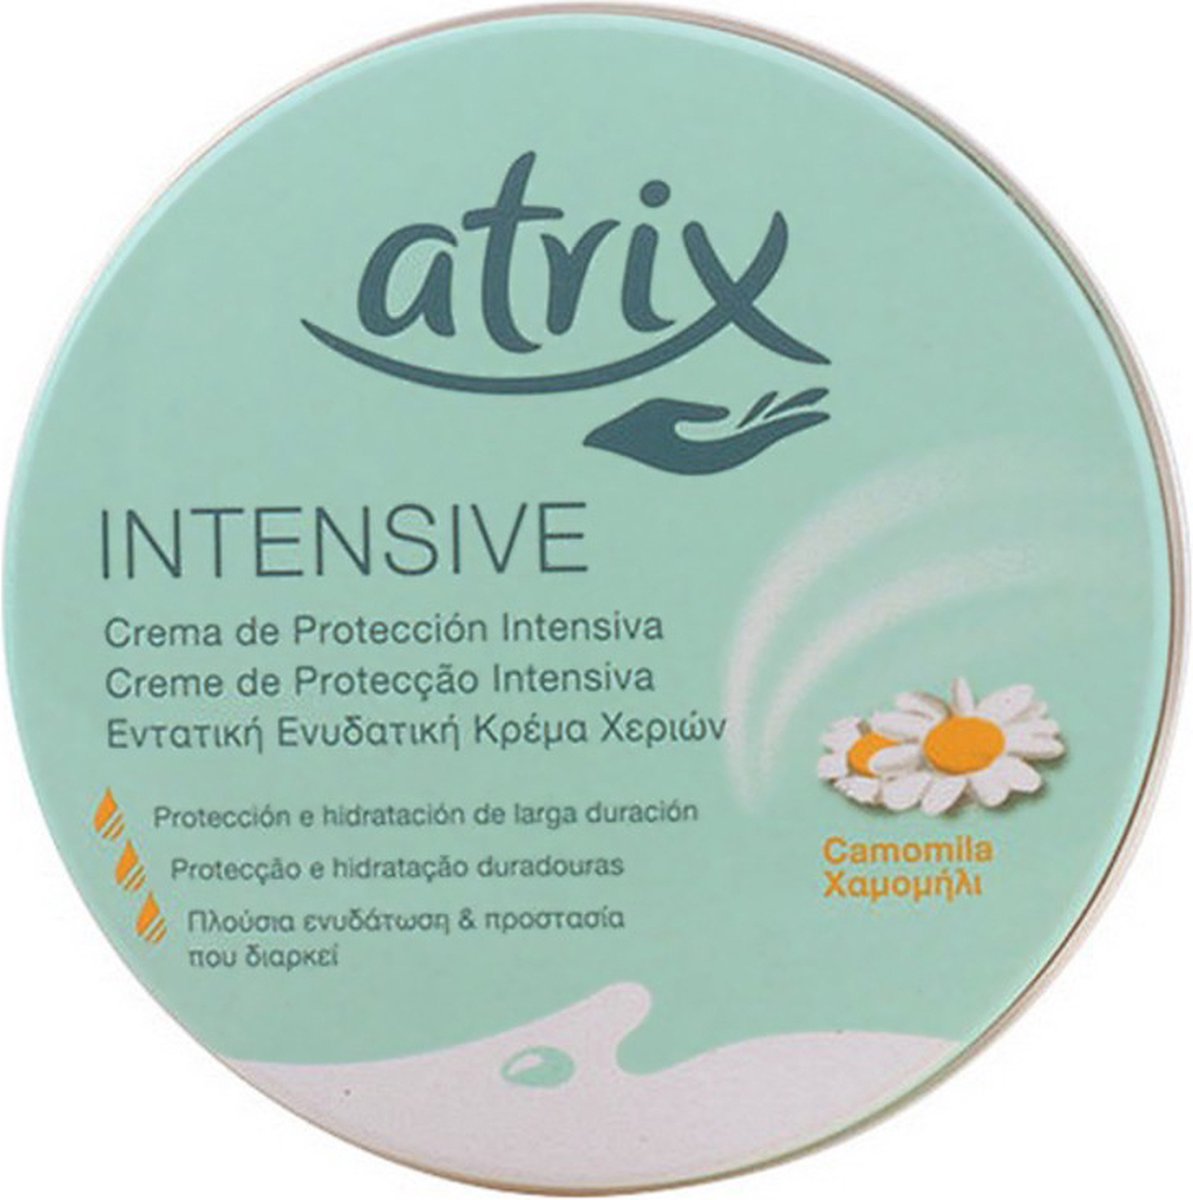 Handcrème Intensive Atrix Intensive 250 g